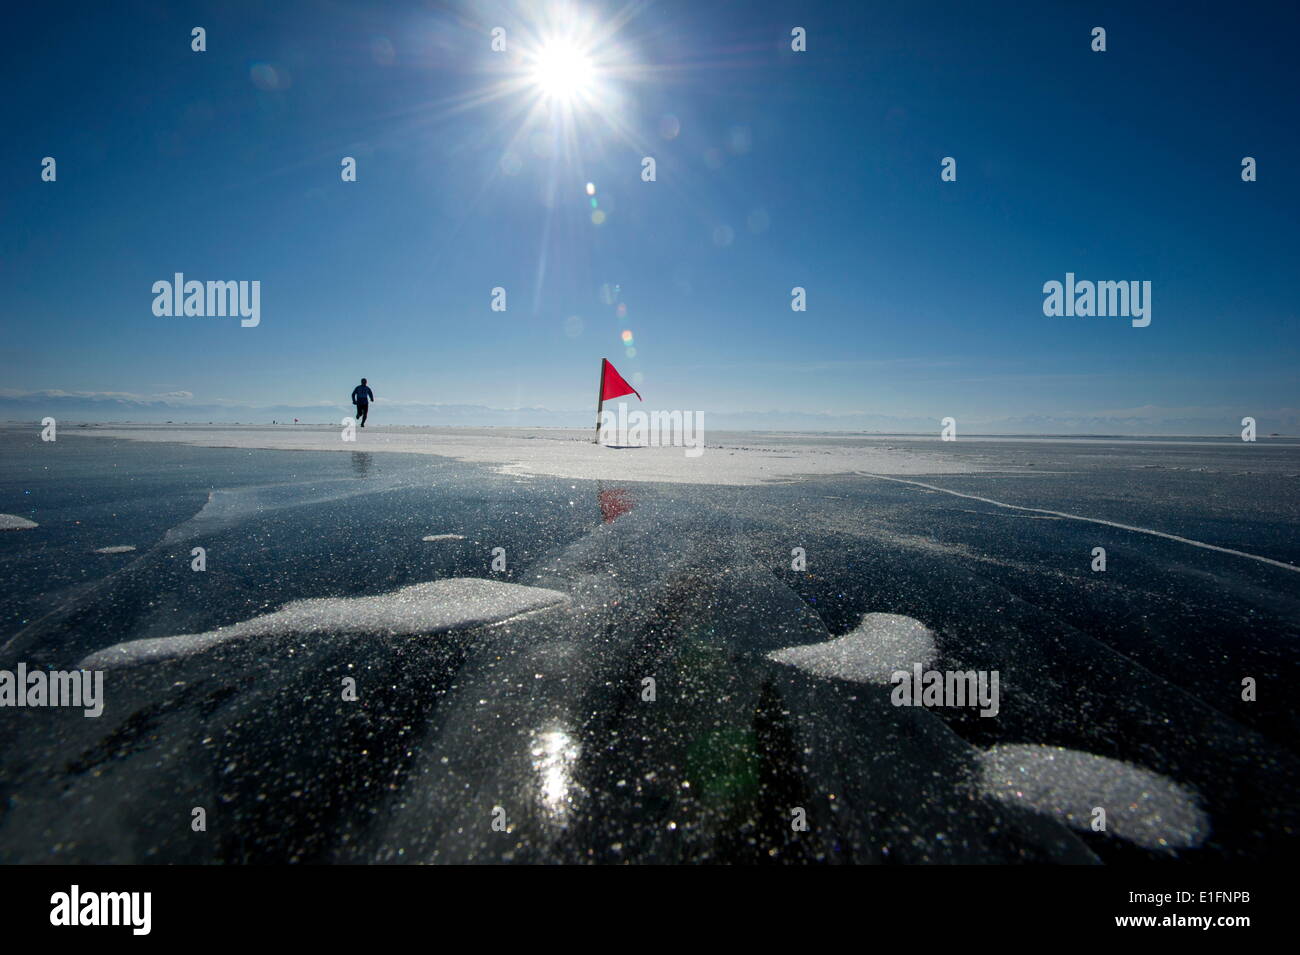 Runner in the 10th Baikal Ice Marathon, run on the frozen surface of the world's largest lake, Siberia, Irkutsk Oblast, Russia Stock Photo